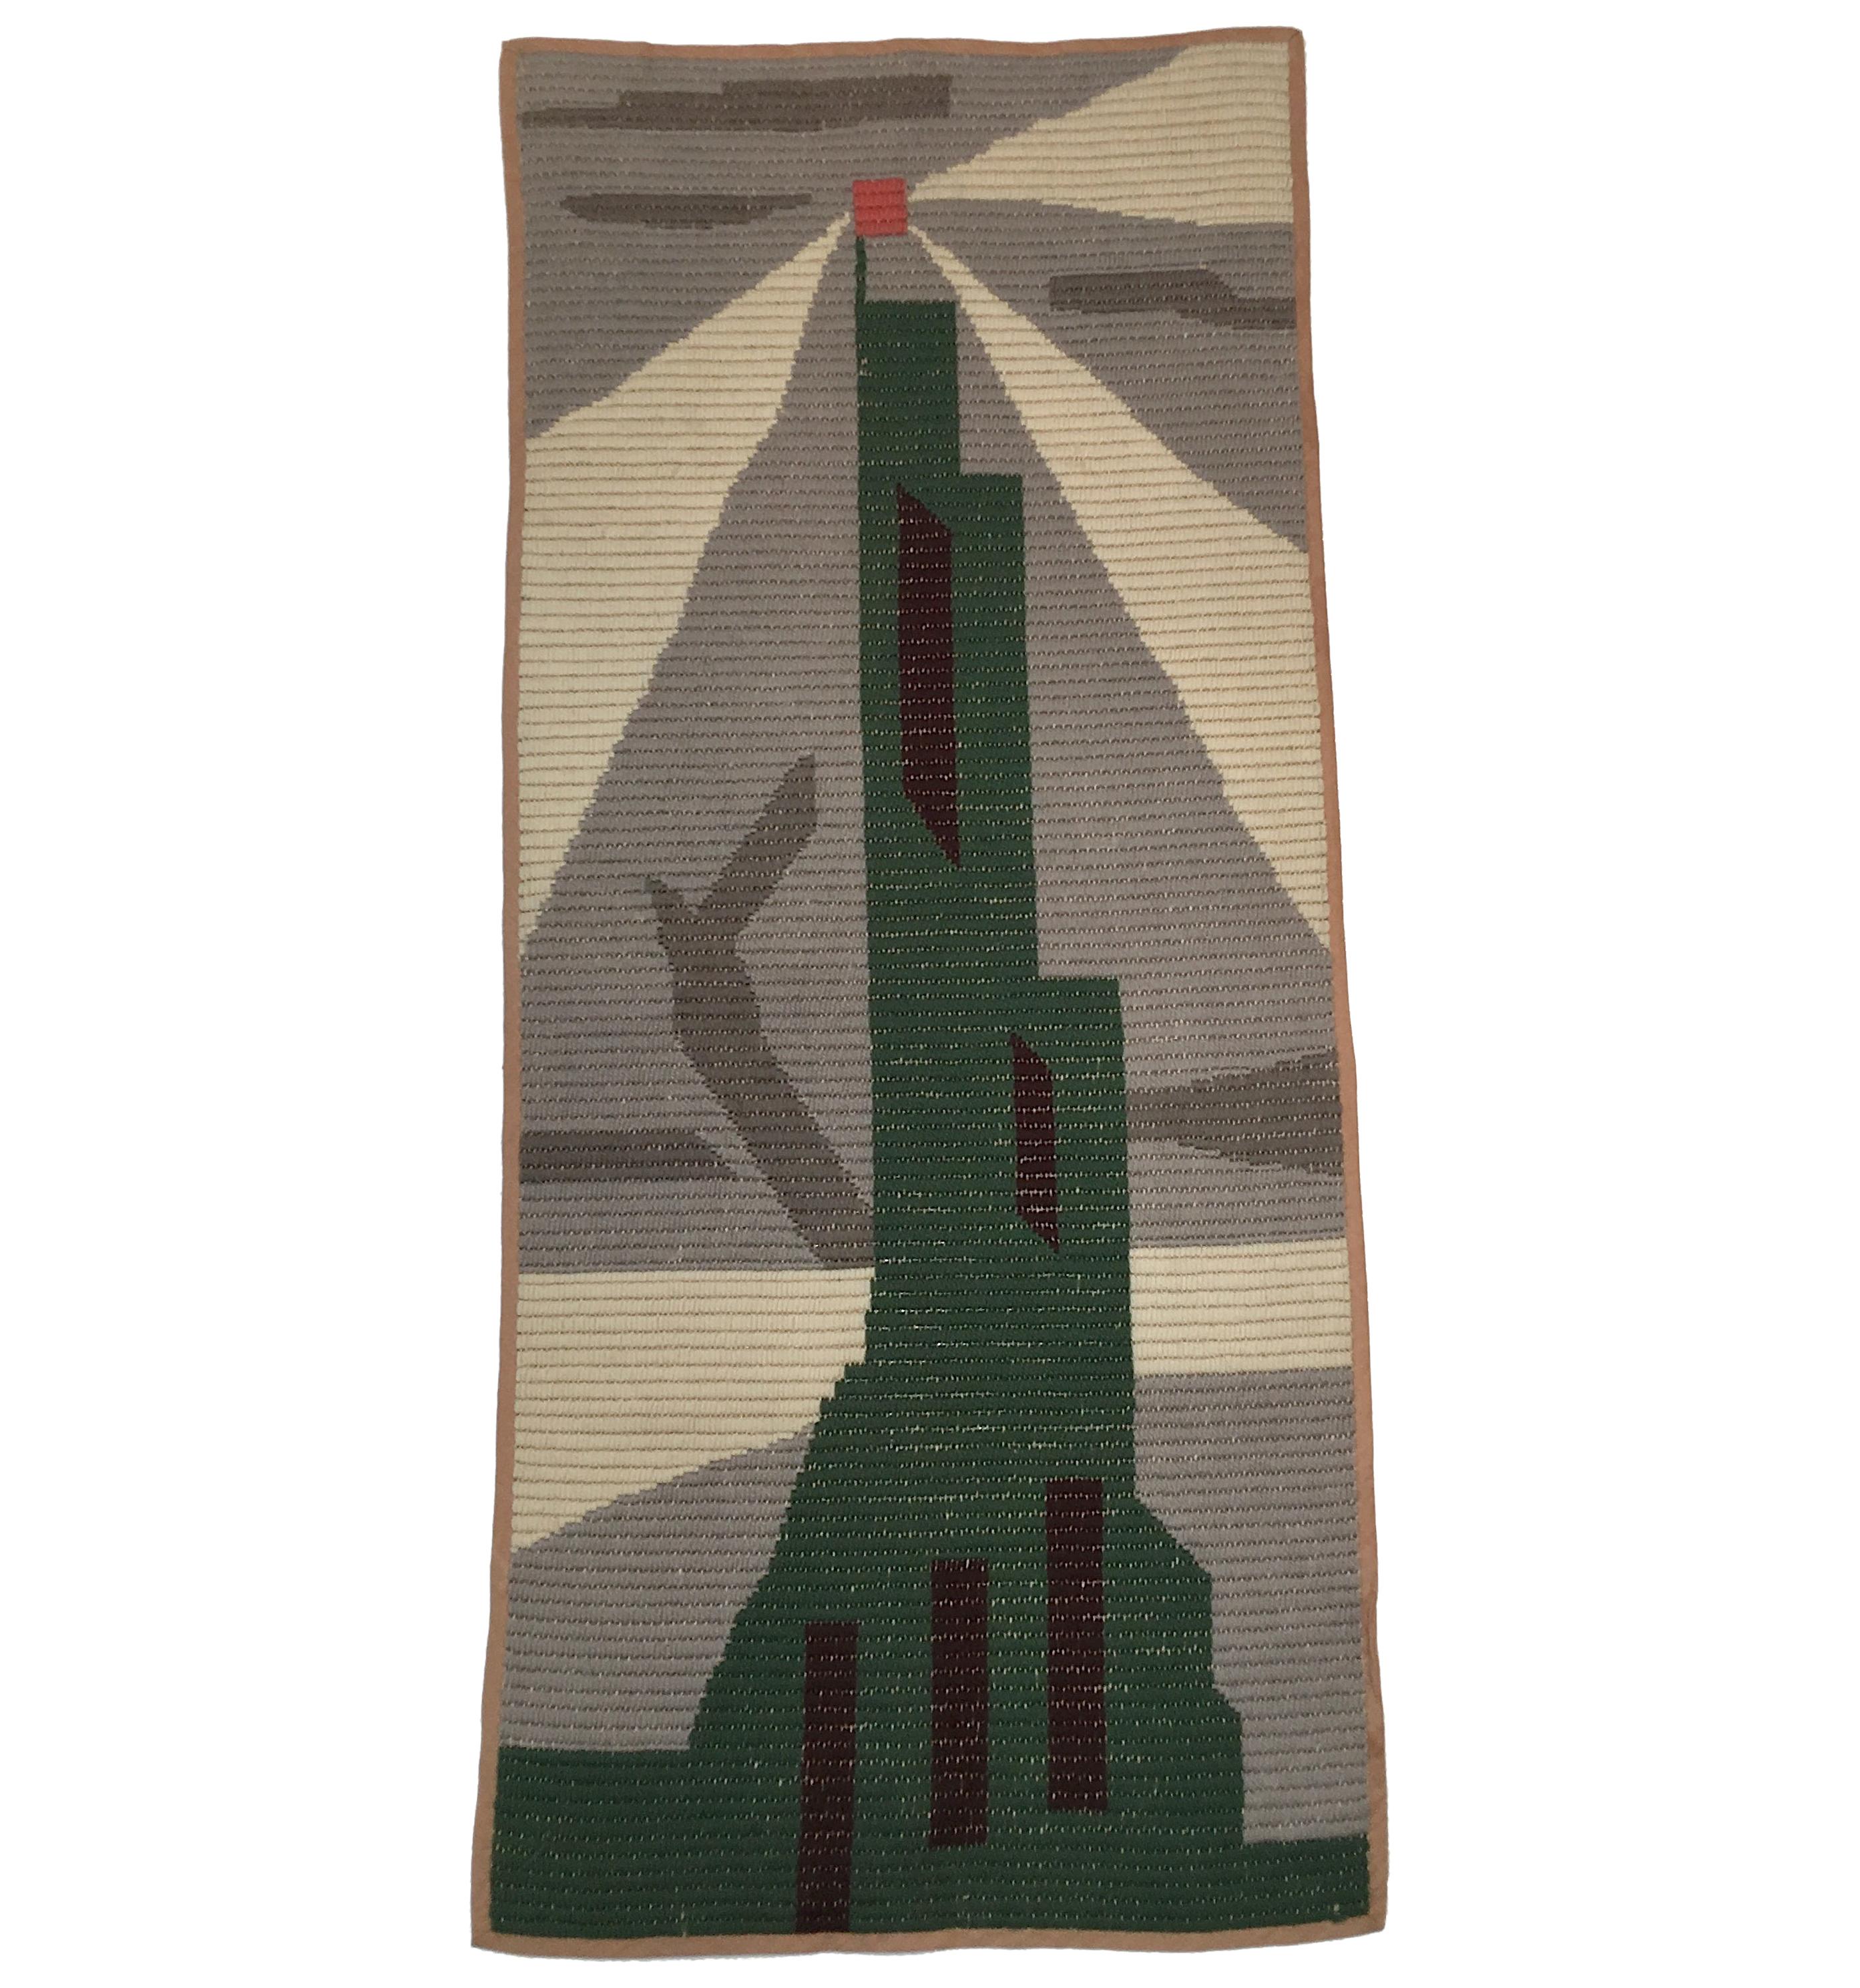 Art Deco Knit Tapestry Skyscraper Design